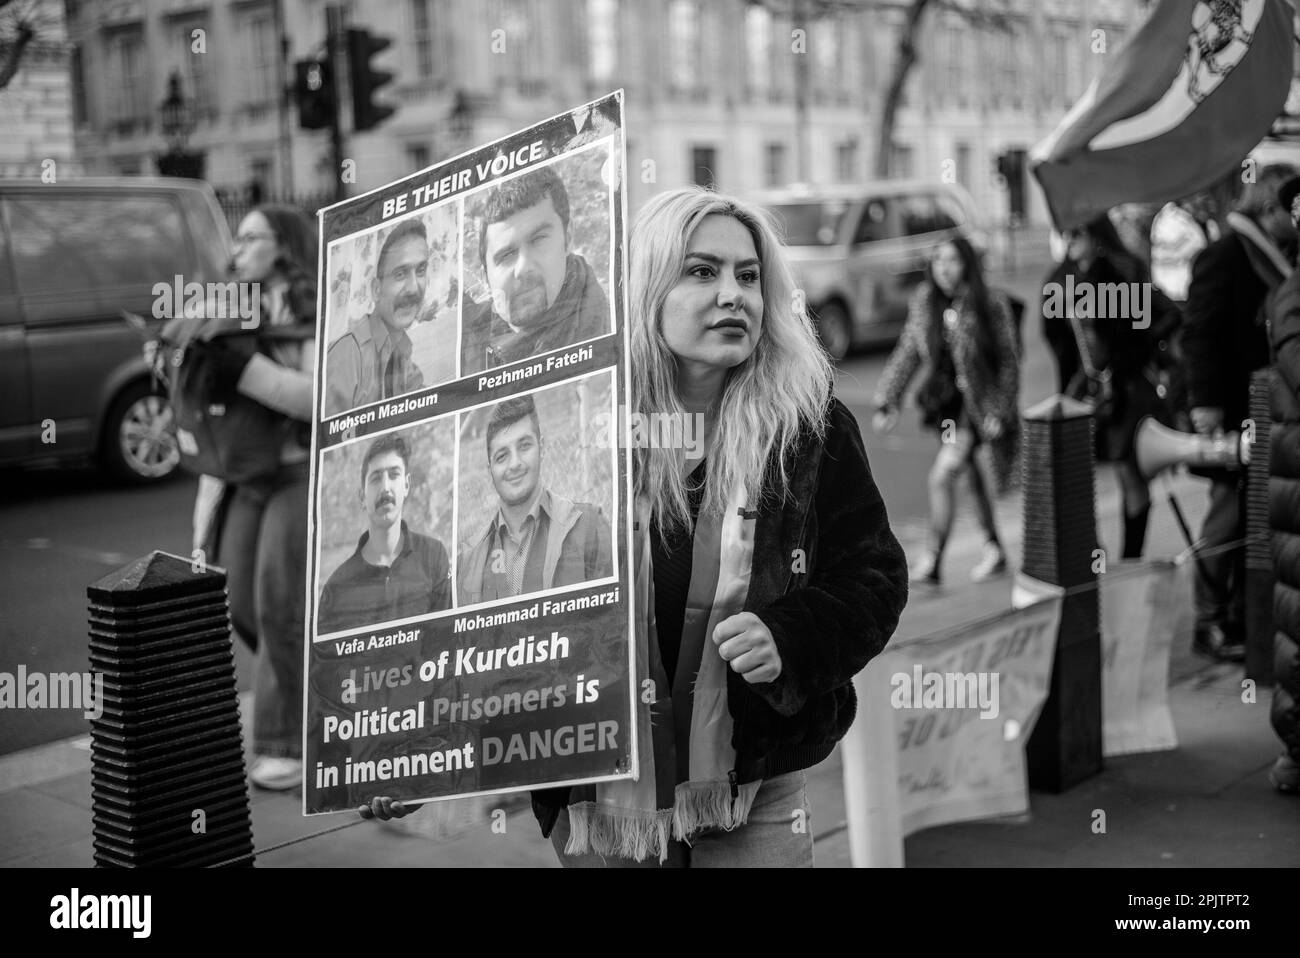 Les Britanniques-Iraniens et les partisans se sont rassemblés devant Downing Street pour protester contre la République islamique au pouvoir en Iran et contre la conduite de l'IRGC. Le 16 septembre 2022, Mahsa Amini, une iranienne de 22 ans, également connue sous le nom de Jina Amini, est décédée des blessures qu'elle a reçues alors qu'elle était sous la garde de la police de moralité religieuse du gouvernement iranien. La mort d'Amini a entraîné une série de manifestations à travers l'Iran contre la république islamique au pouvoir. Banque D'Images